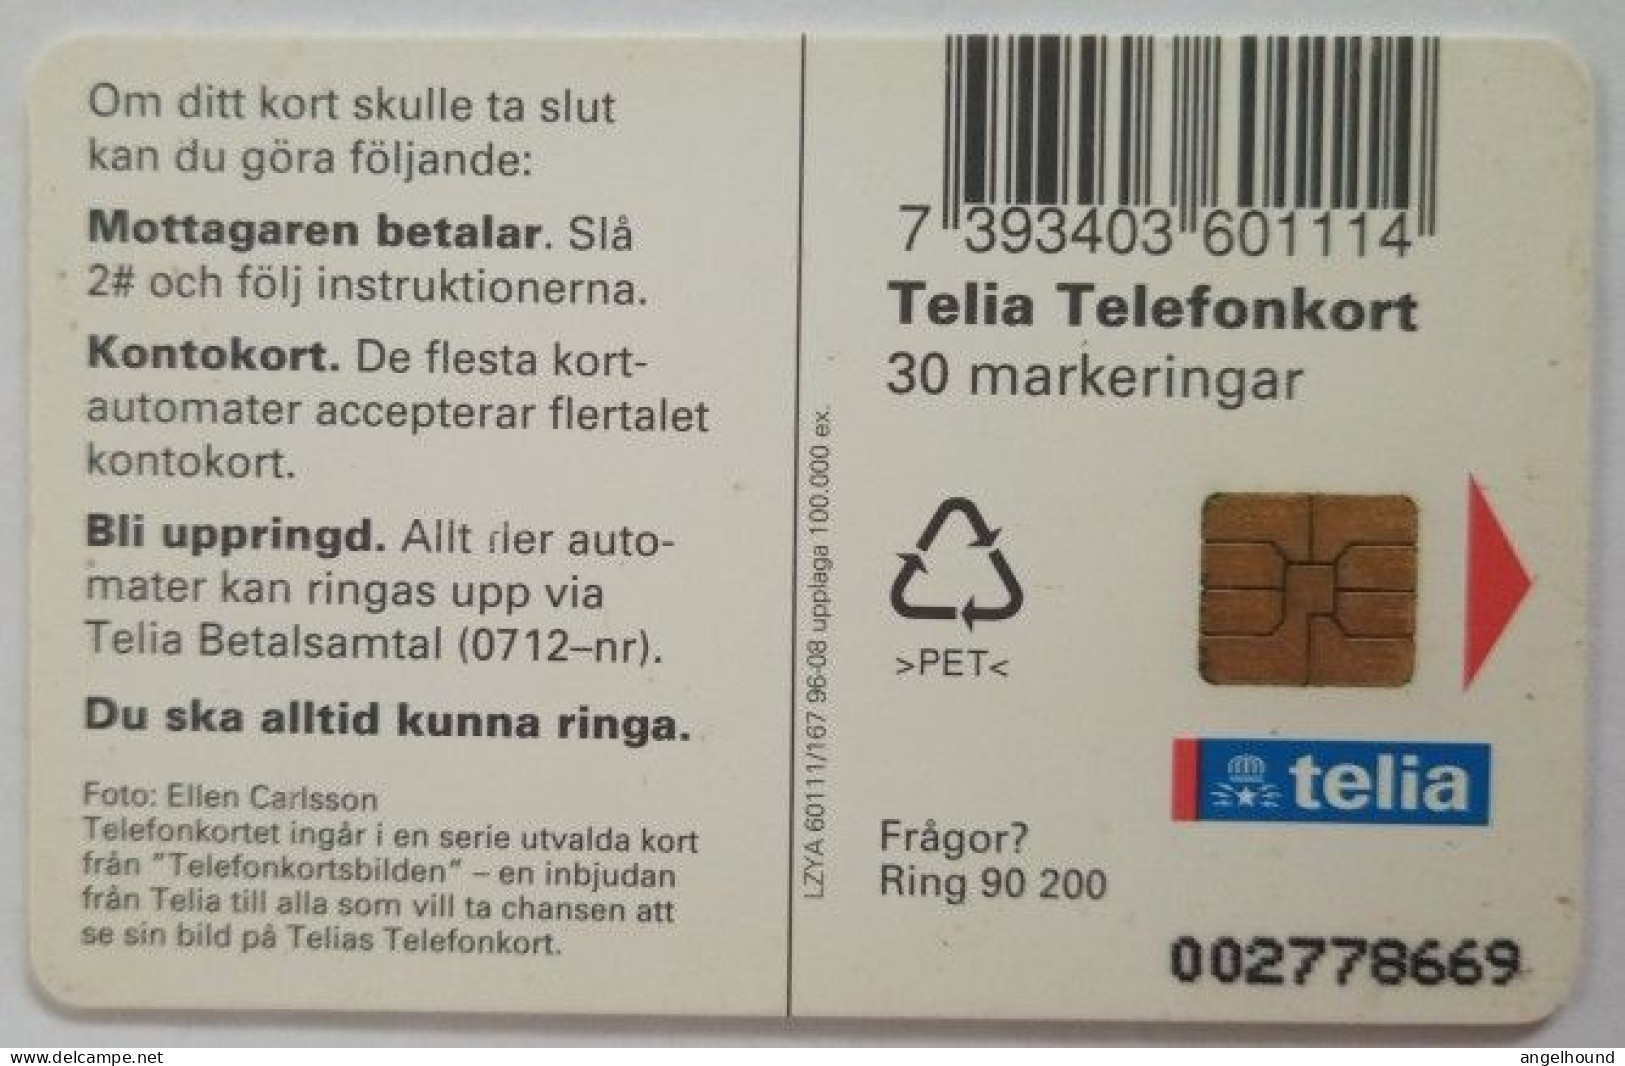 Sweden 30Mk. Chip Card - Bird 4 Tawny Owls - Strix Aluco Owls - Svezia